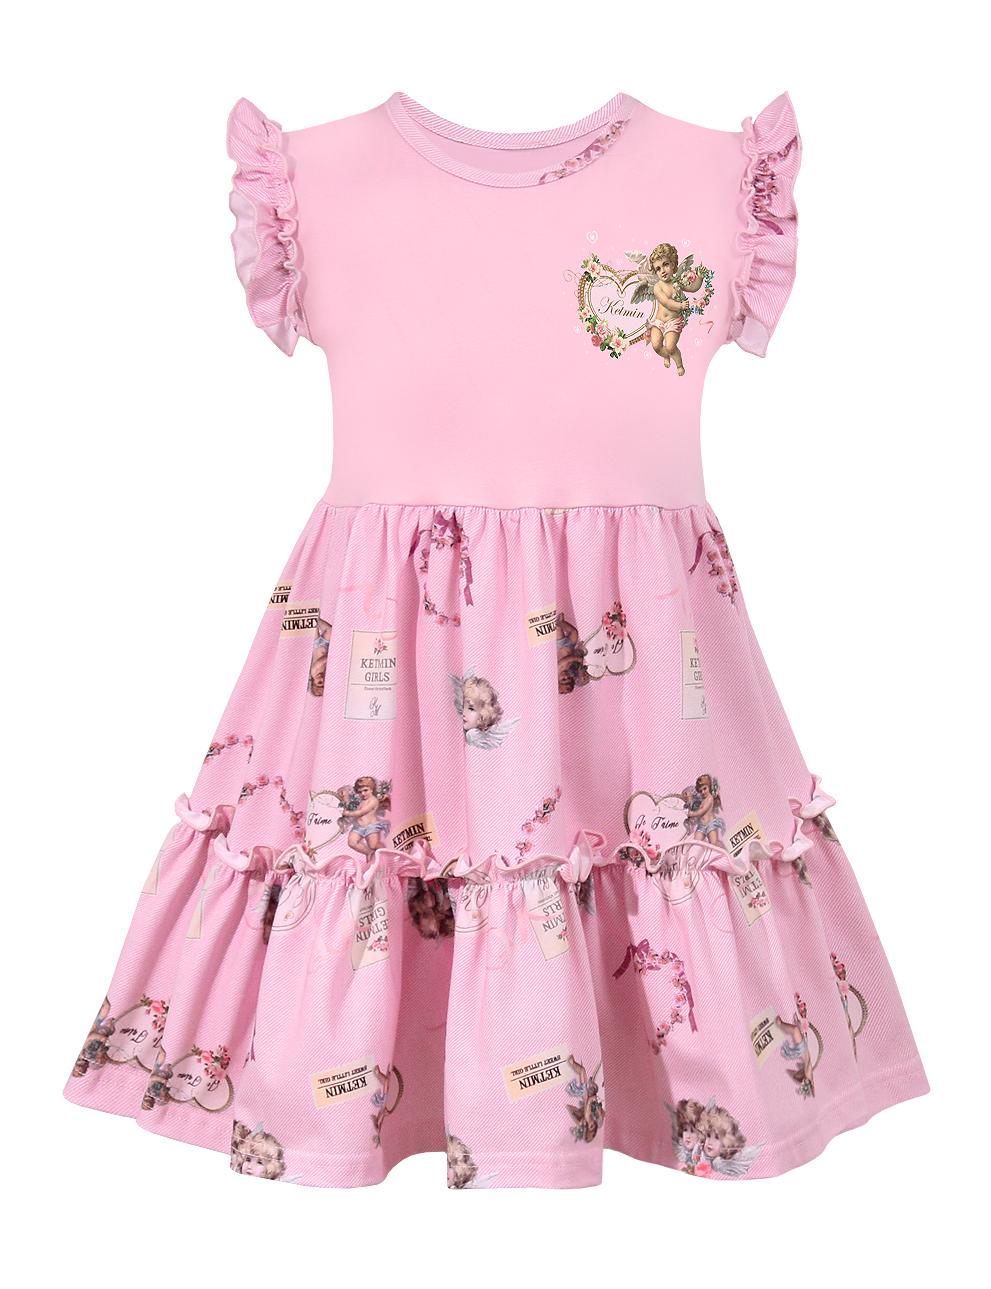 Платье для девочки KETMIN КОКЕТКА цв.Angel розовый